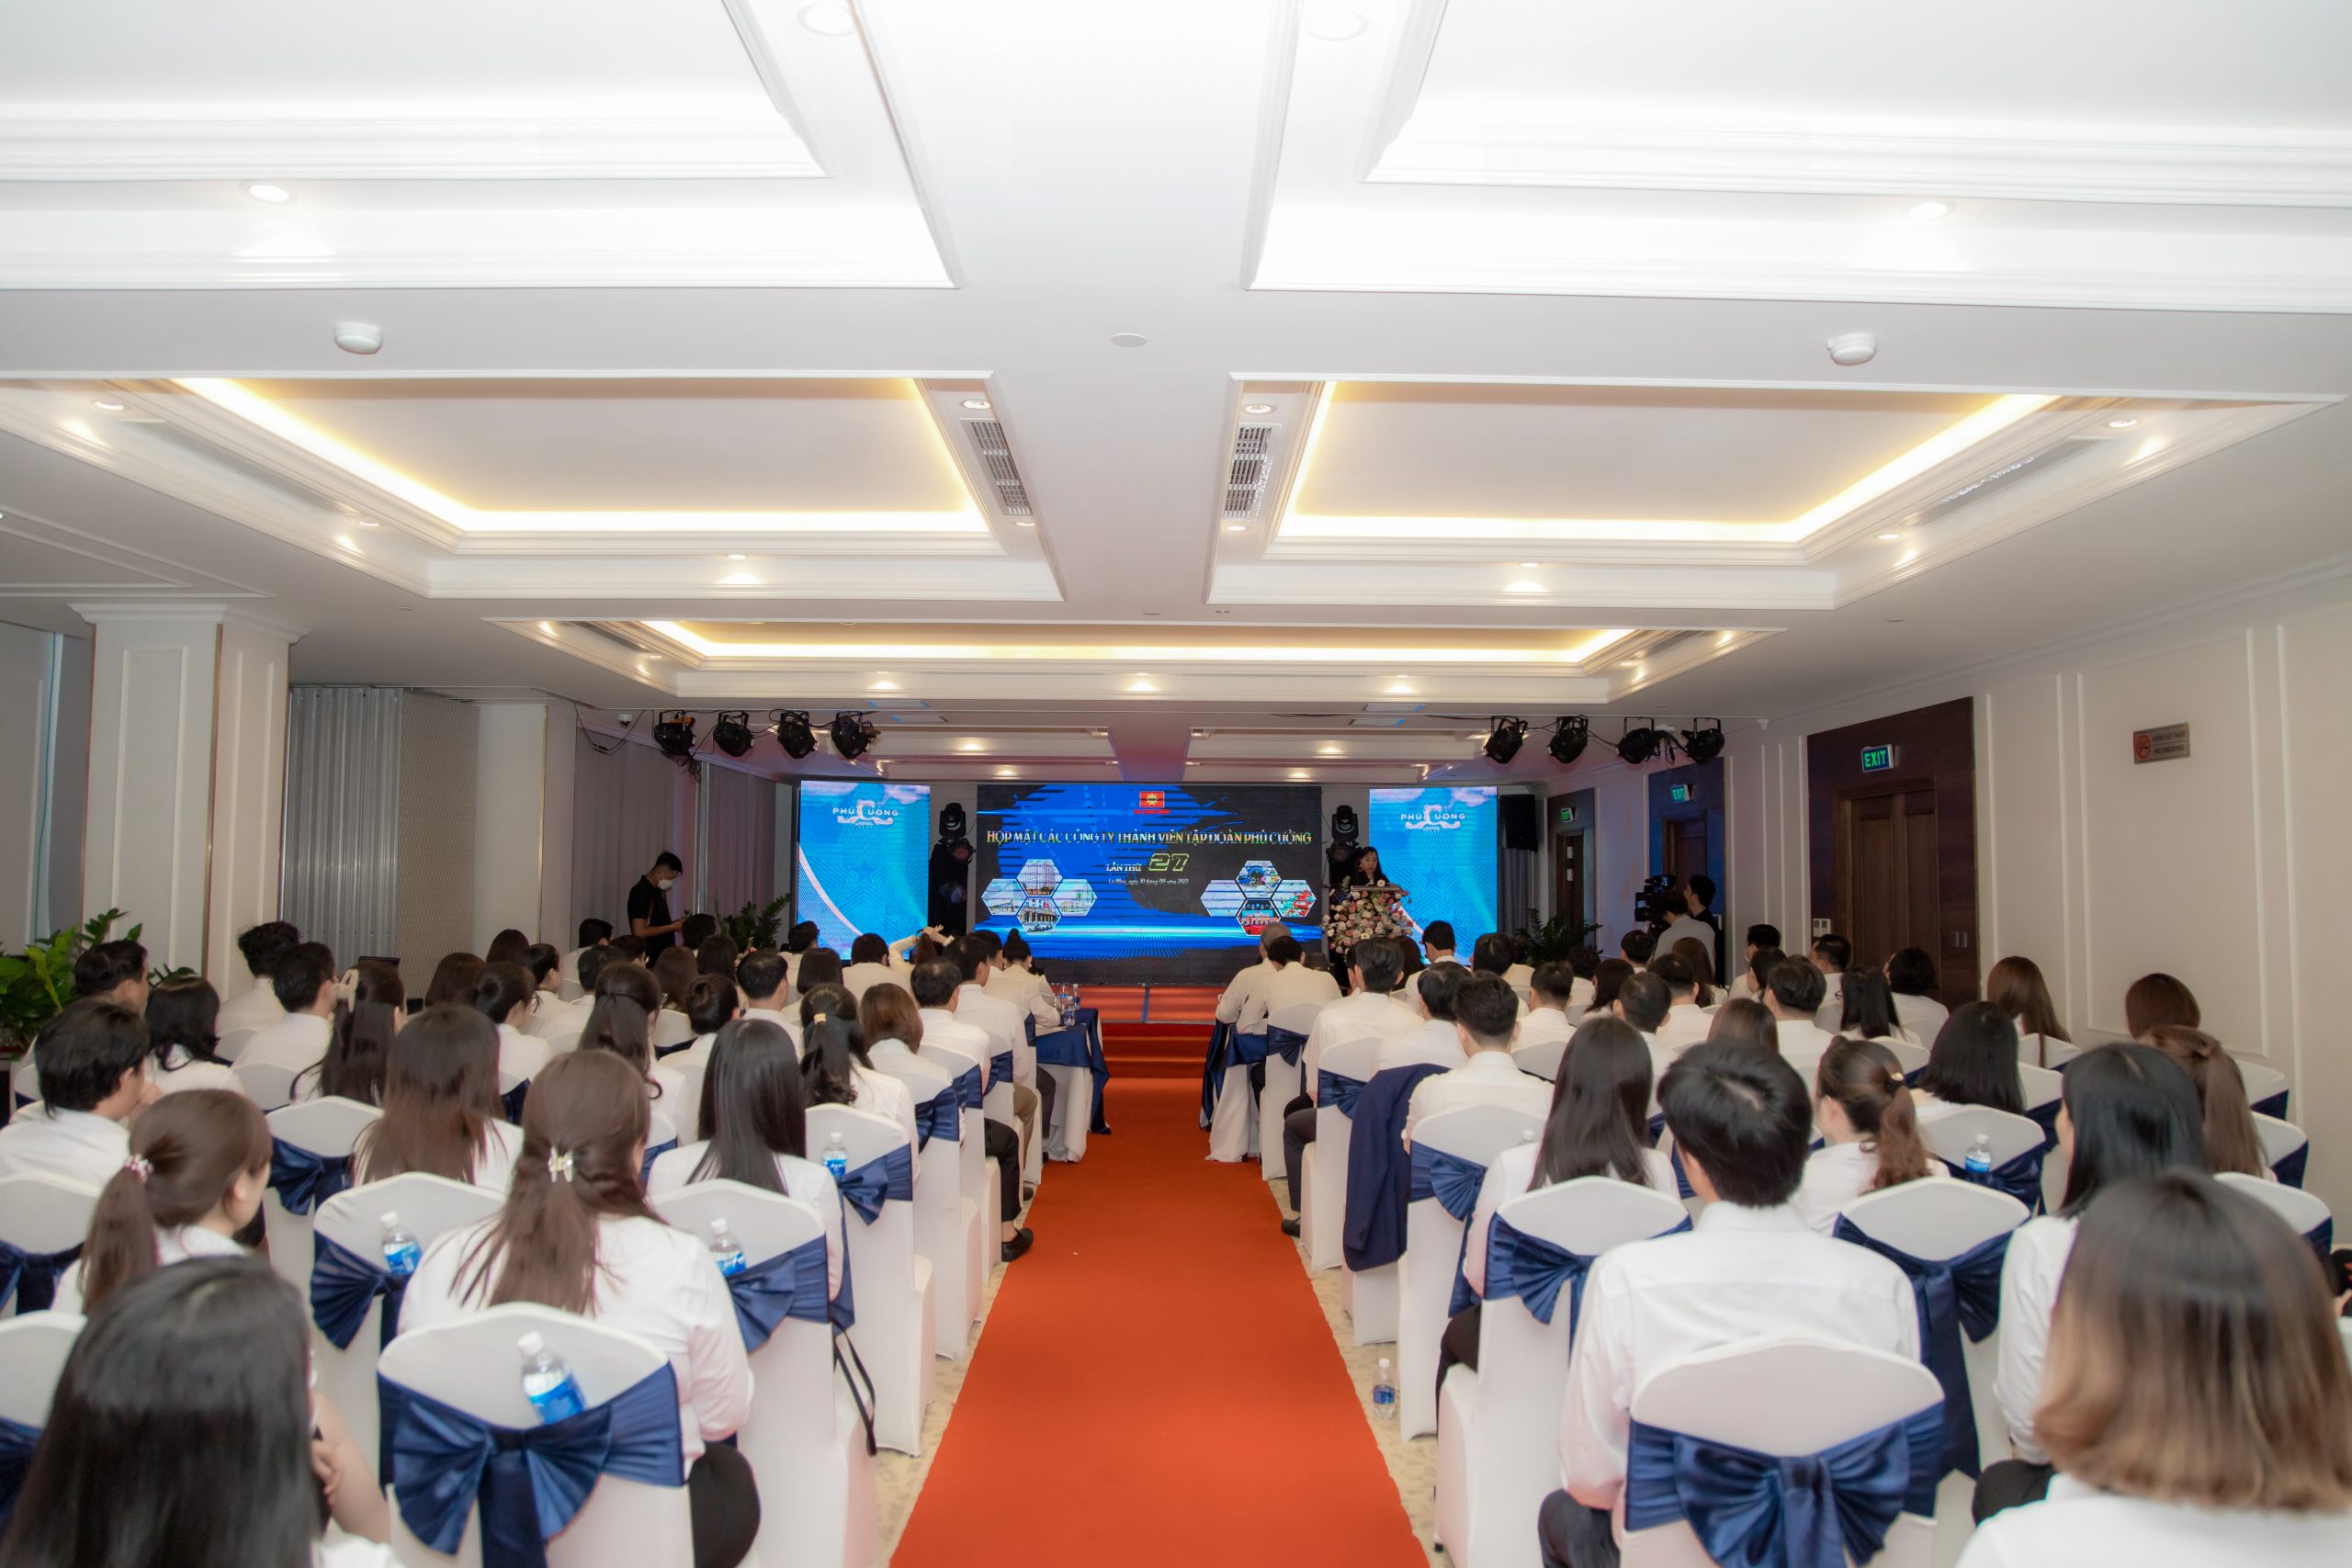 Tập đoàn Phú Cường họp hệ thống lần thứ 27 & Lễ đón nhận quyết định khách sạn Phú Cường đạt chuẩn 4 sao